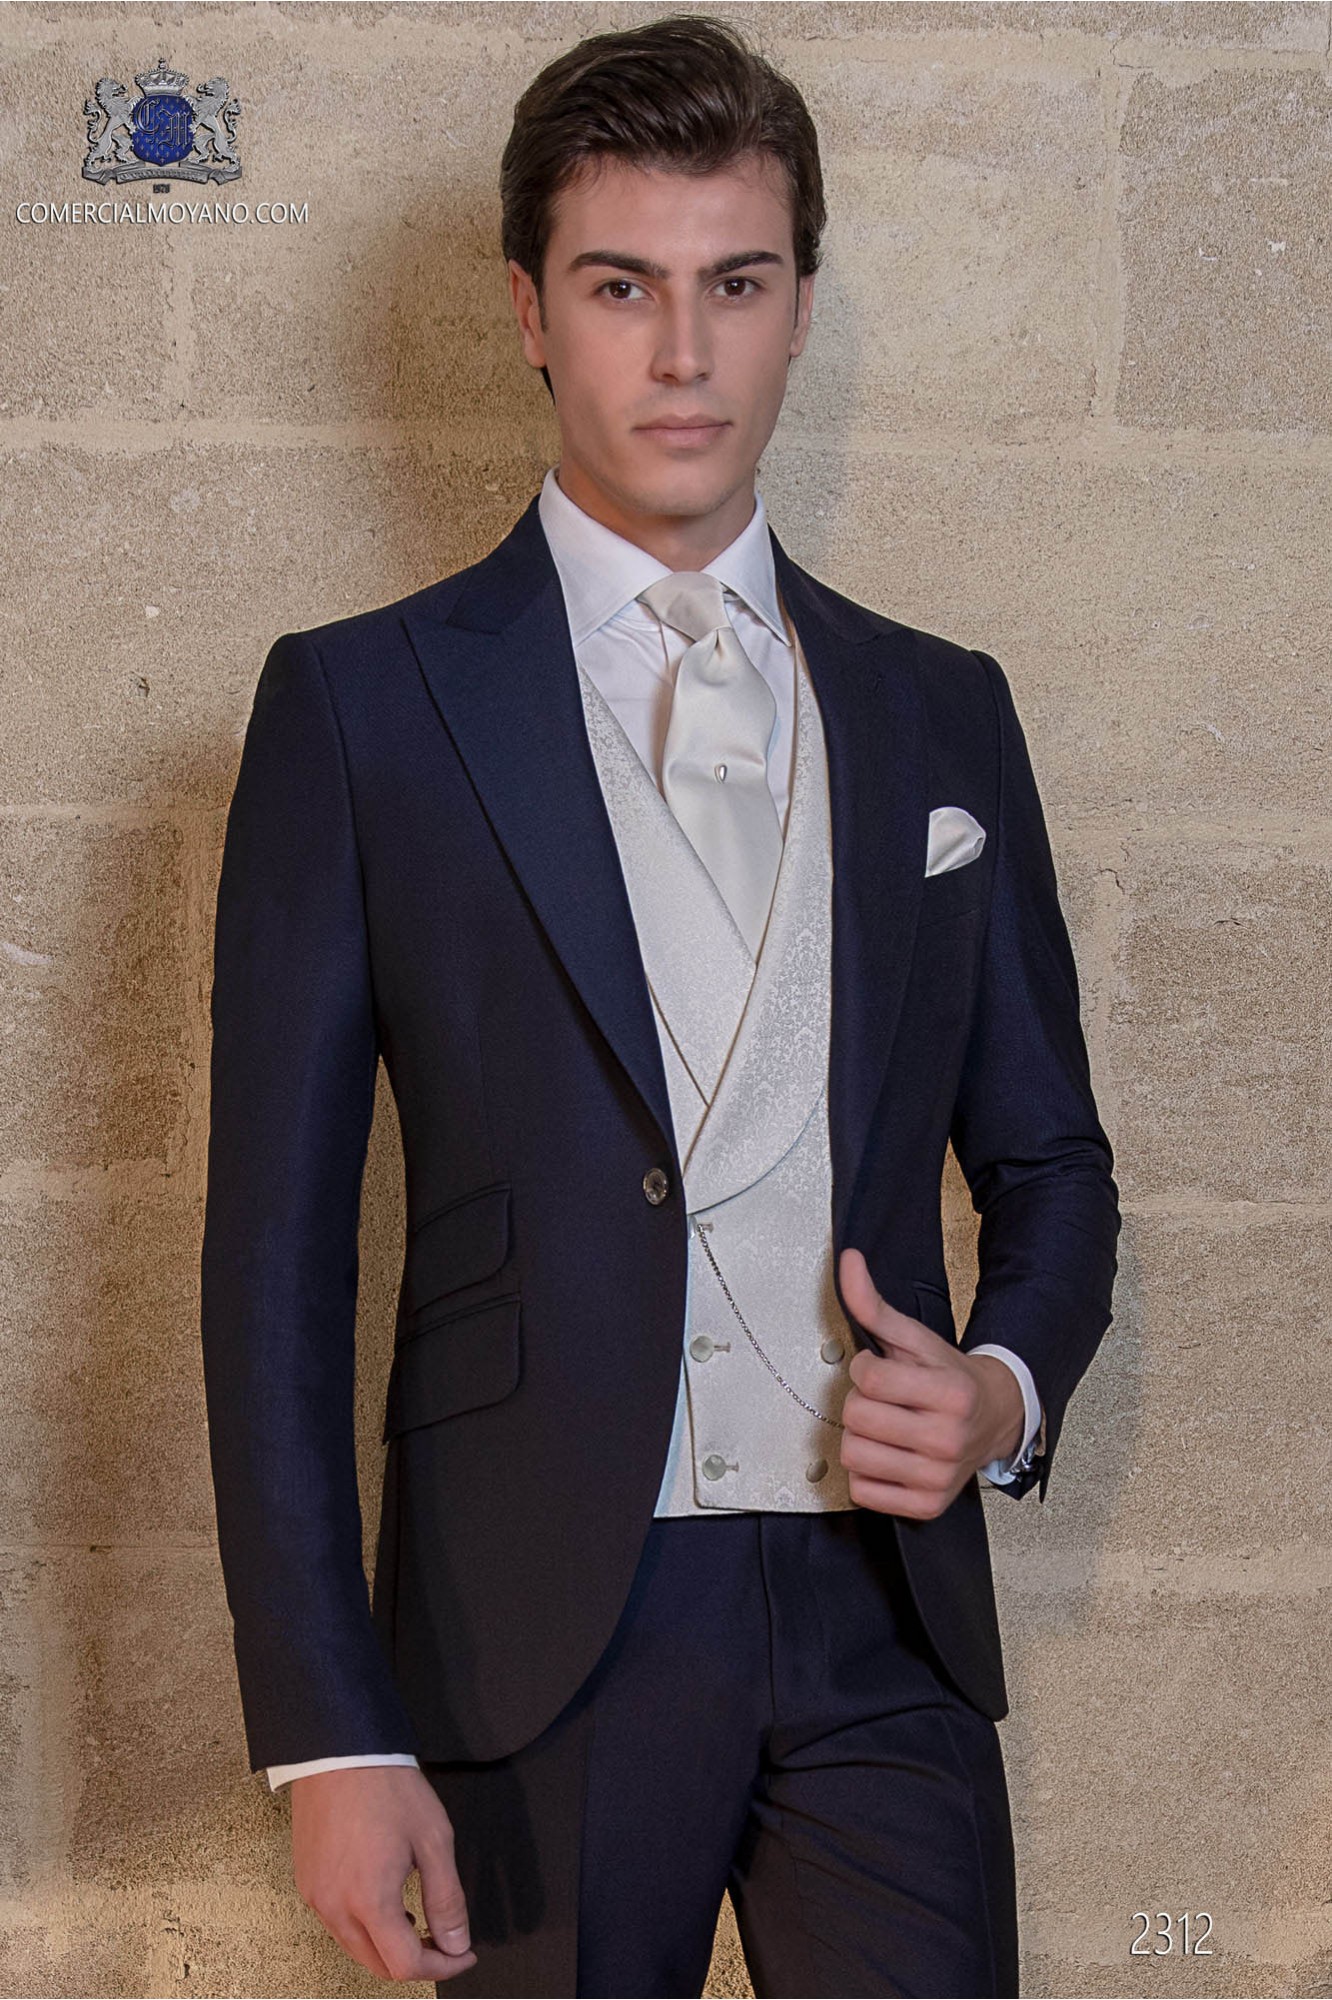 Traje de novio azul marino mixto lana mohair alpaca modelo: 2312 Mario Moyano colección Gentleman